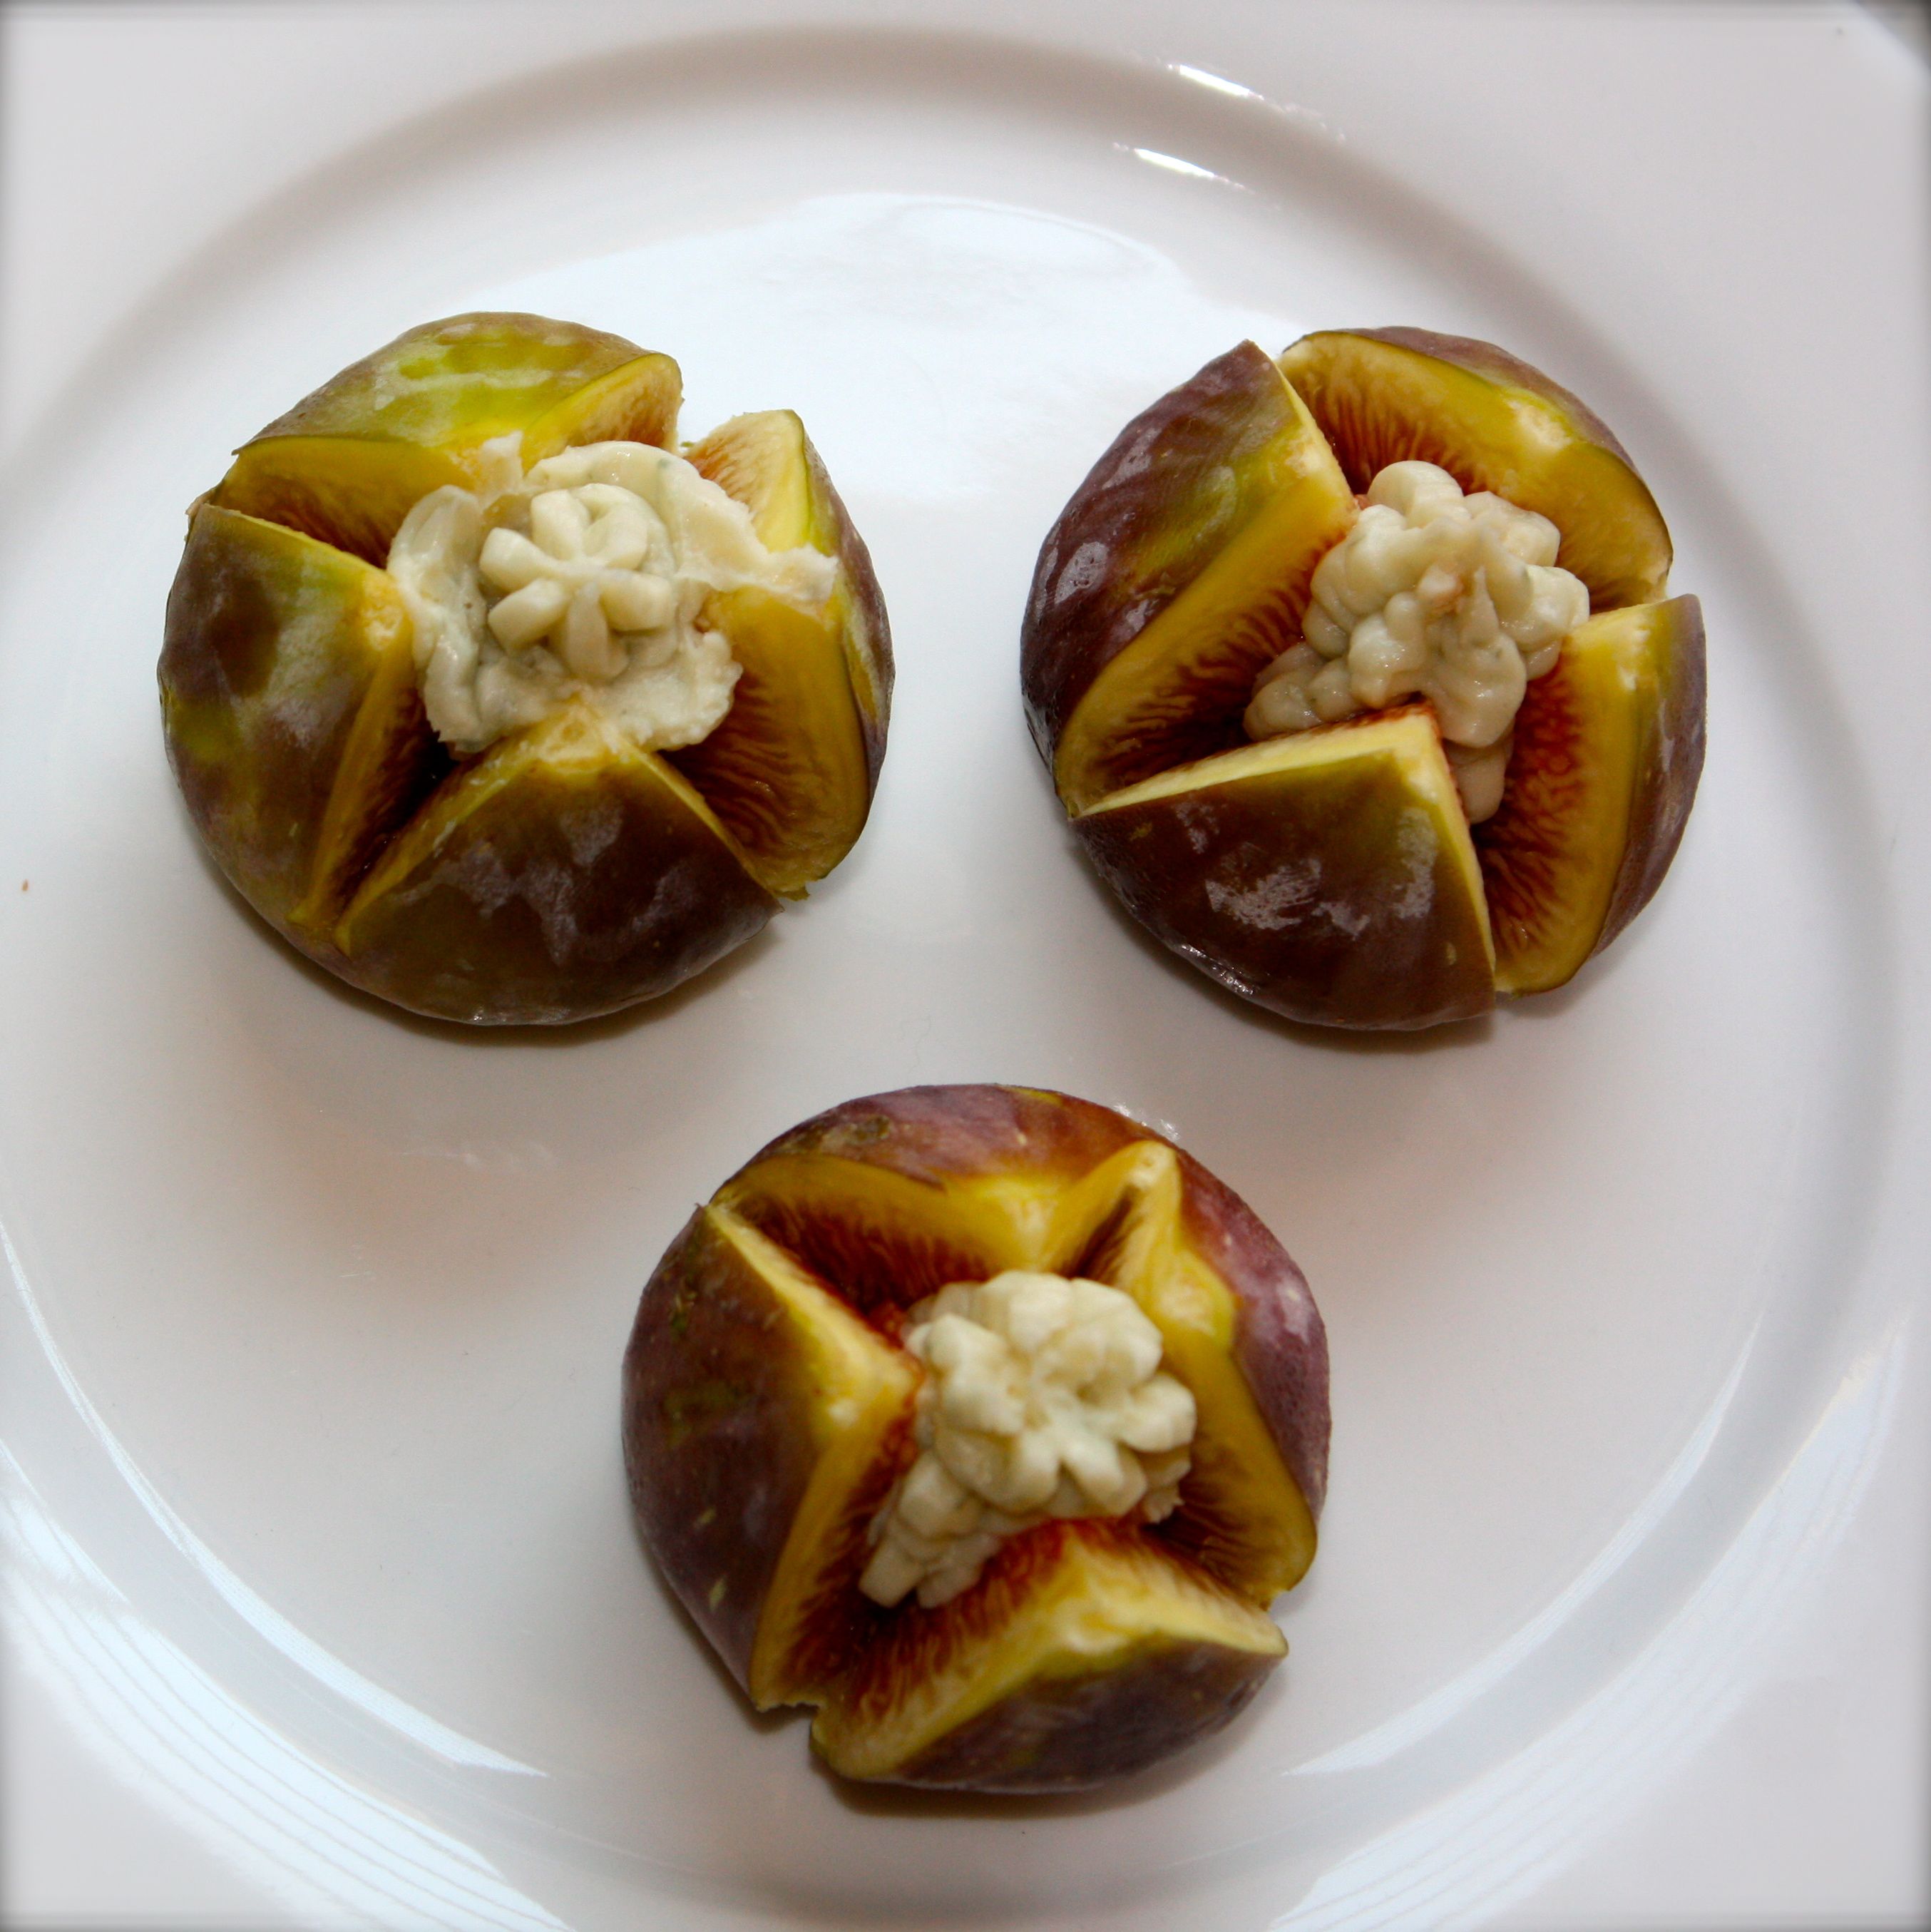 Figs stuffed with gorgonzola cheese